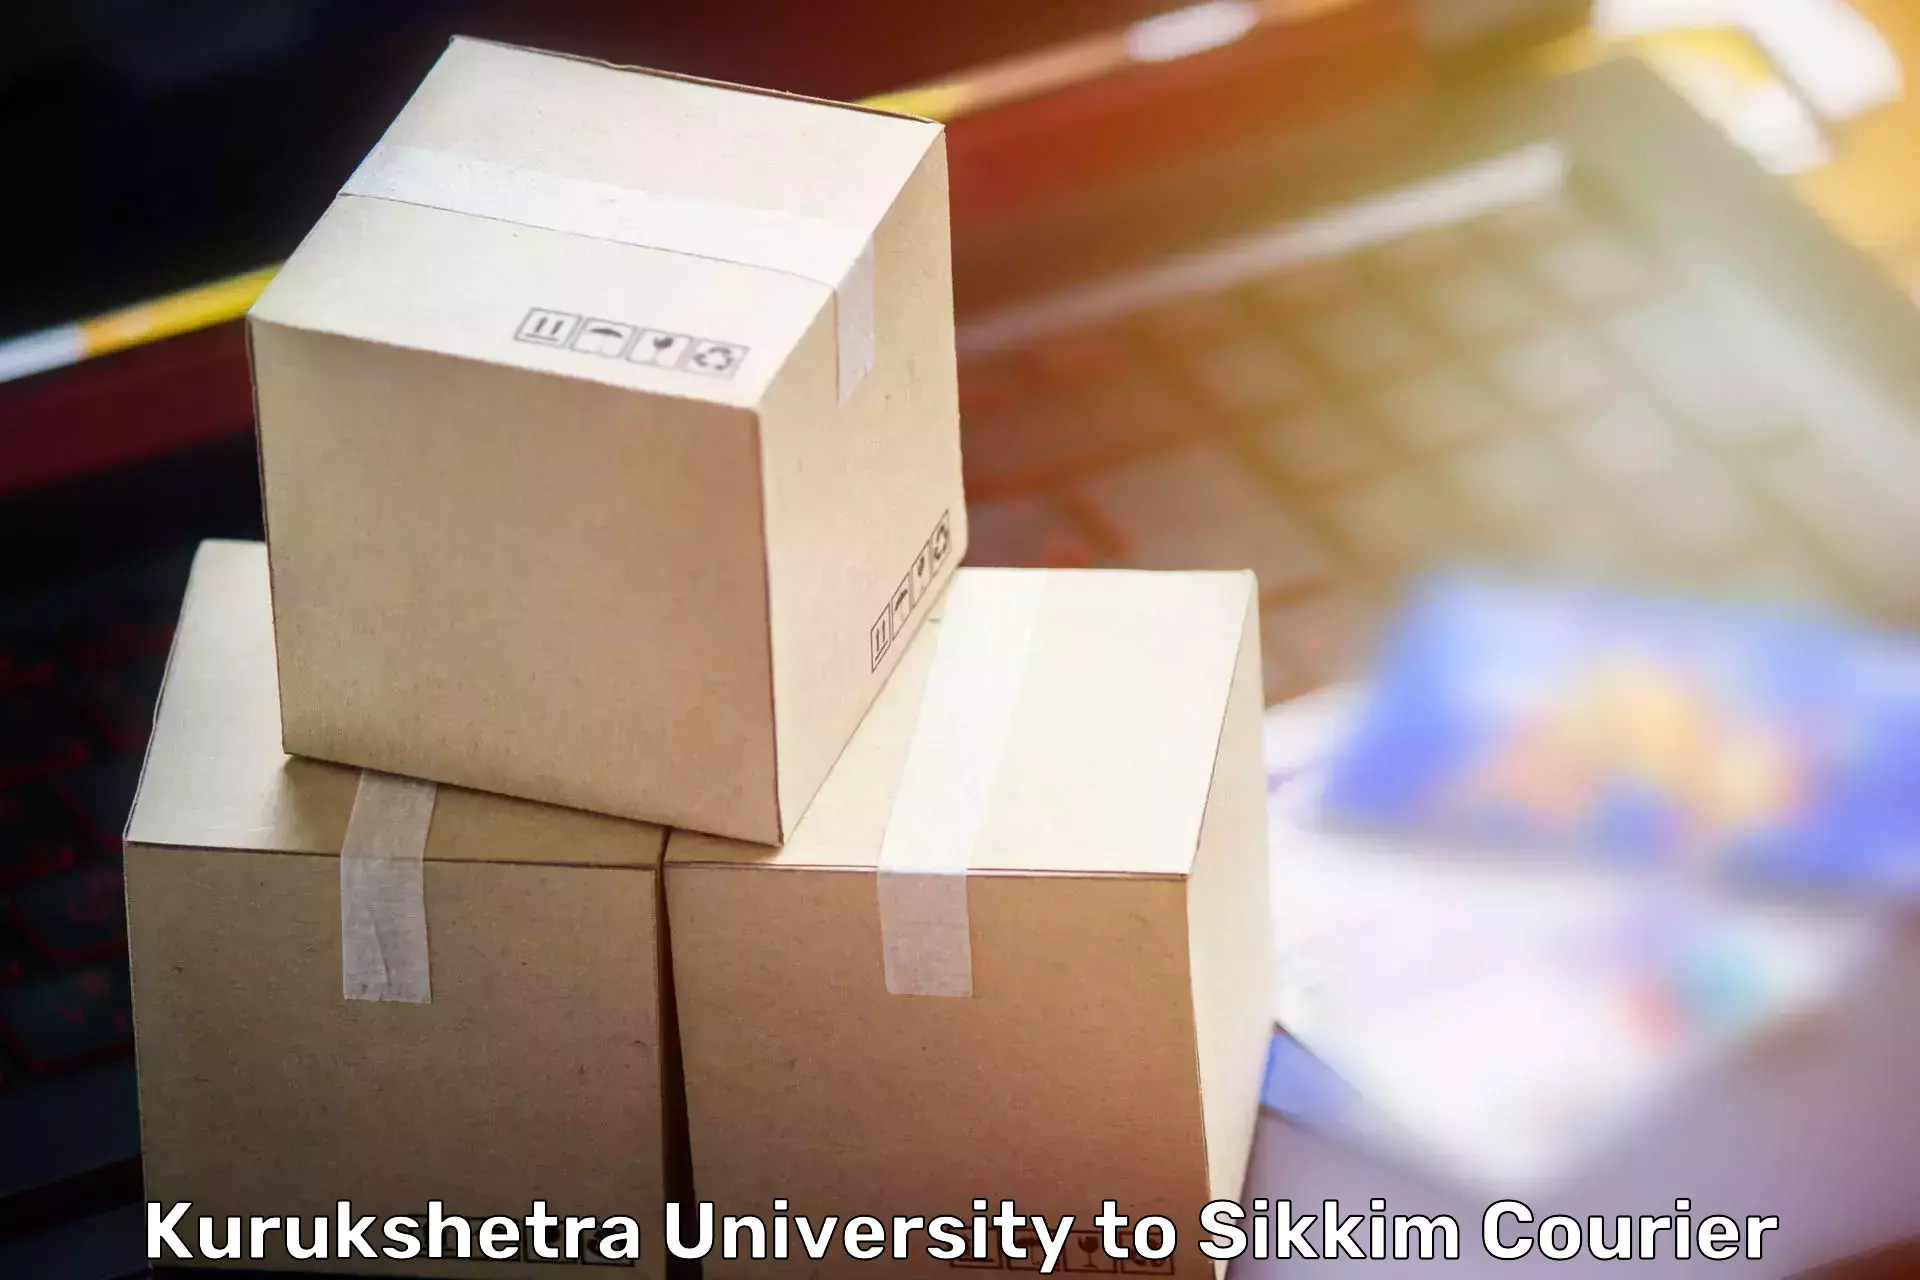 Residential moving experts in Kurukshetra University to Gangtok